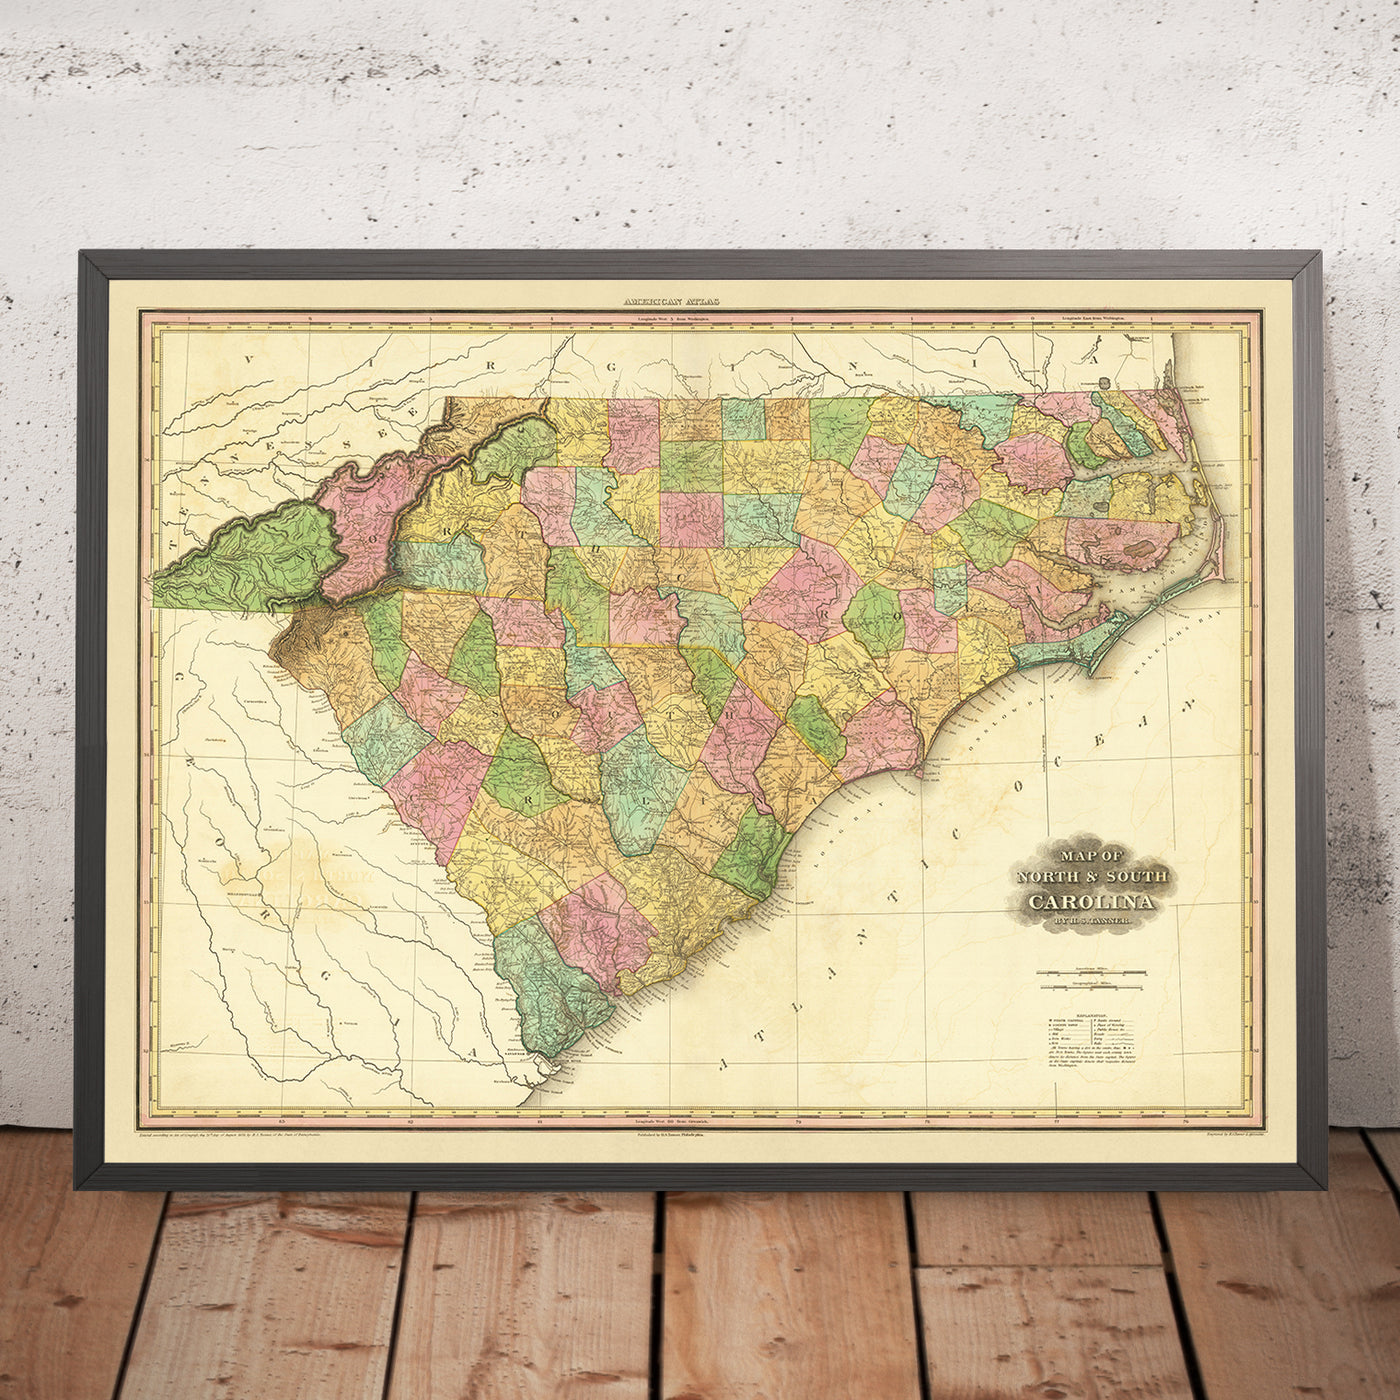 Ancienne carte de la Caroline du Nord et du Sud par Tanner, 1823 : Charleston, Columbia, Charlotte, Raleigh et Wilmington